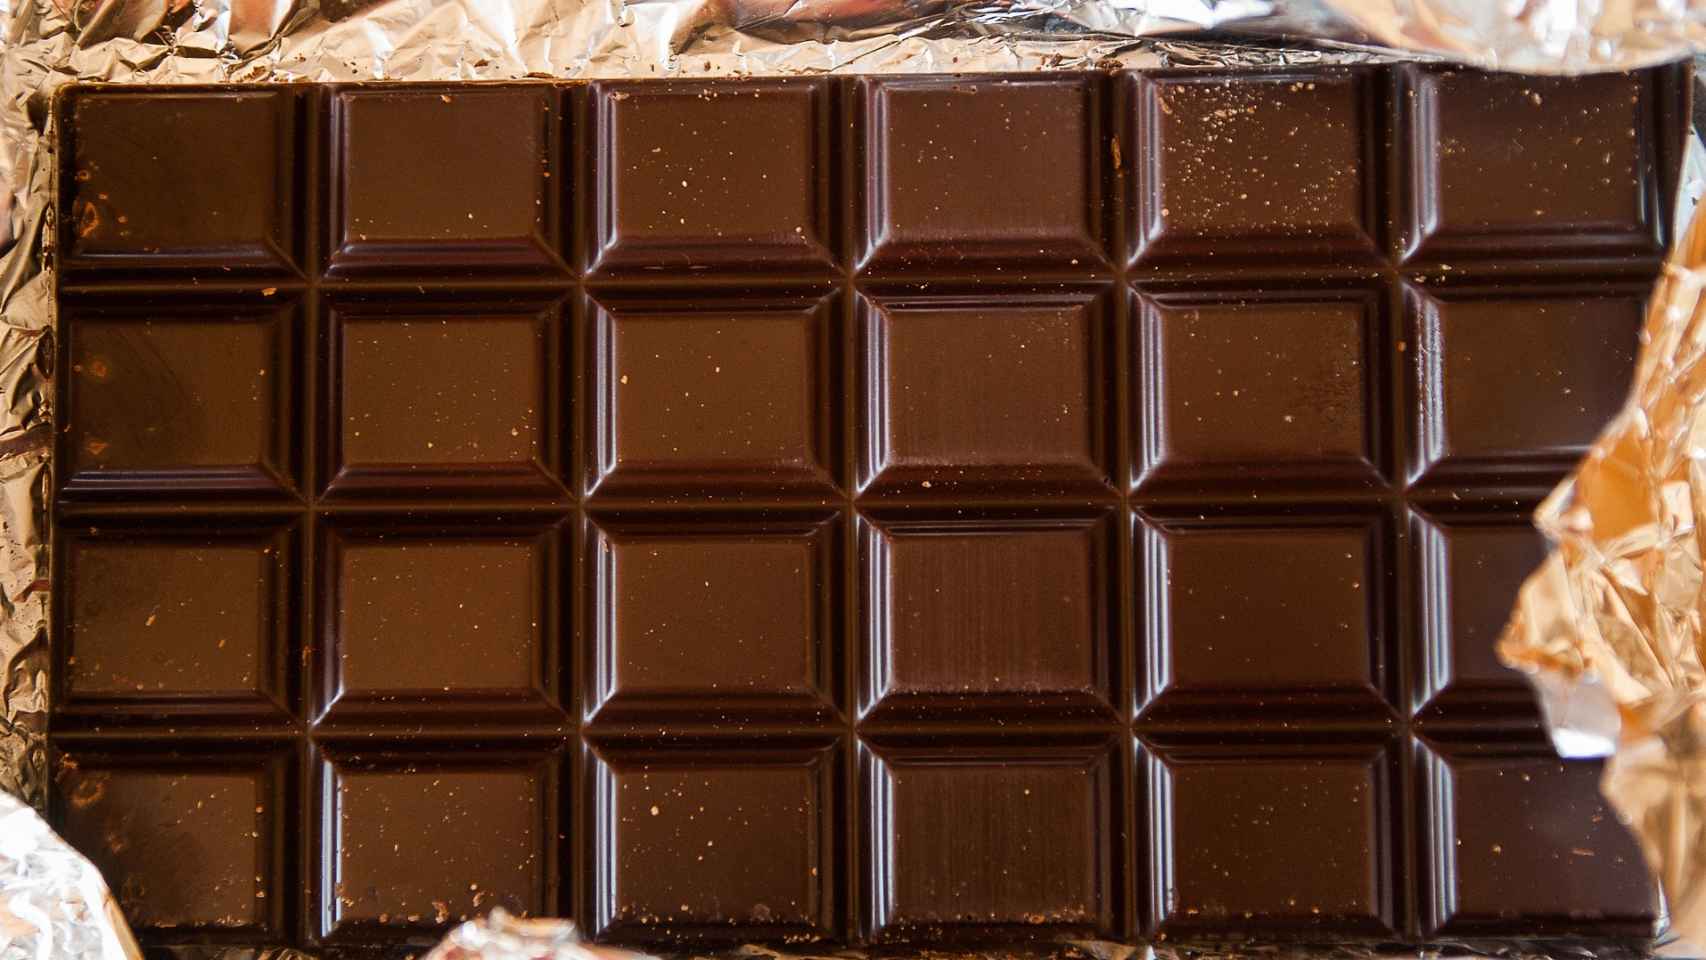 El lugar ideal para conservar el chocolate es la despensa.